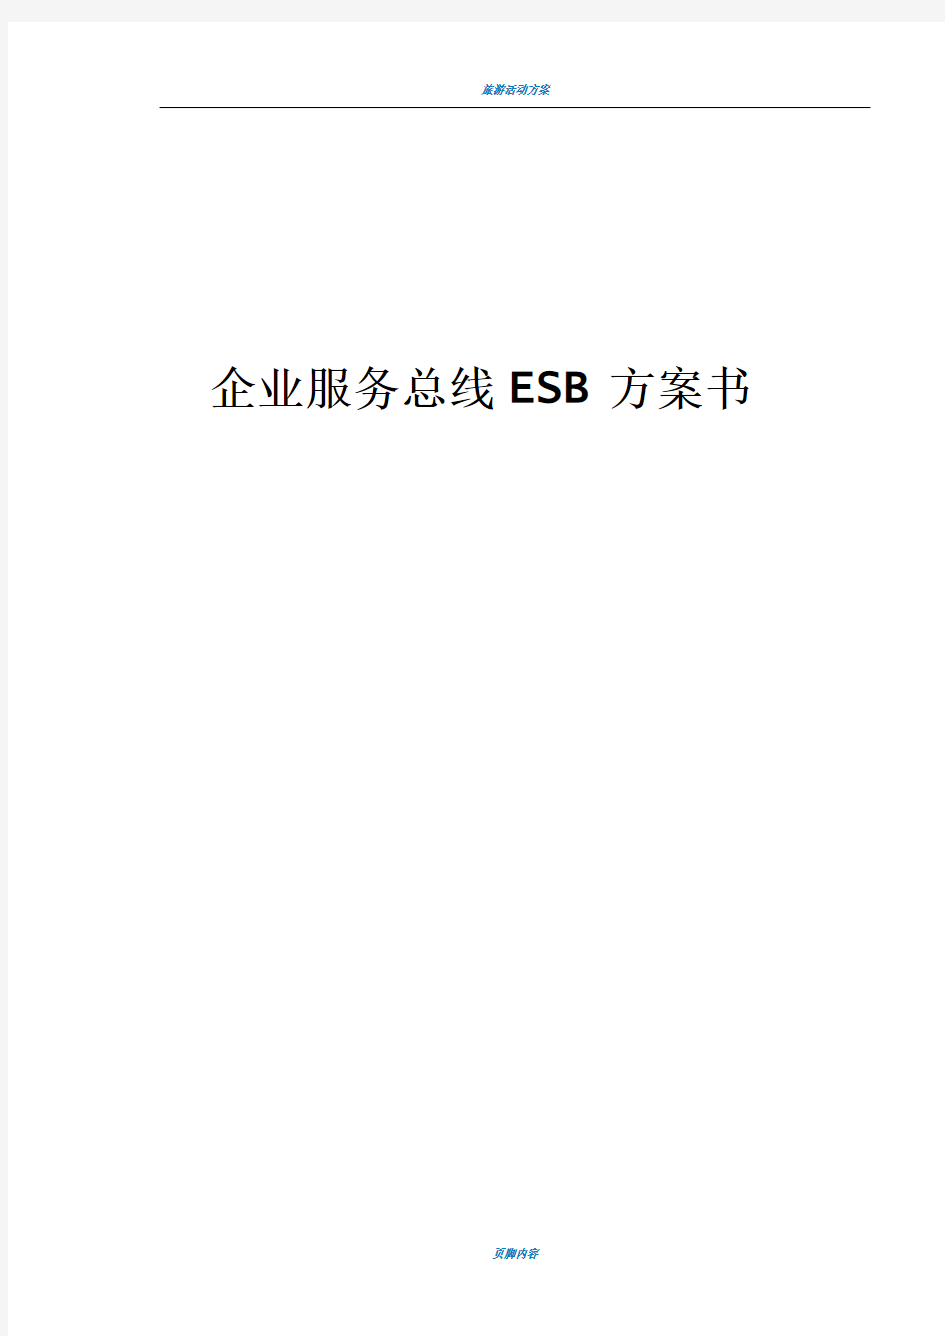 企业服务总线ESB方案书